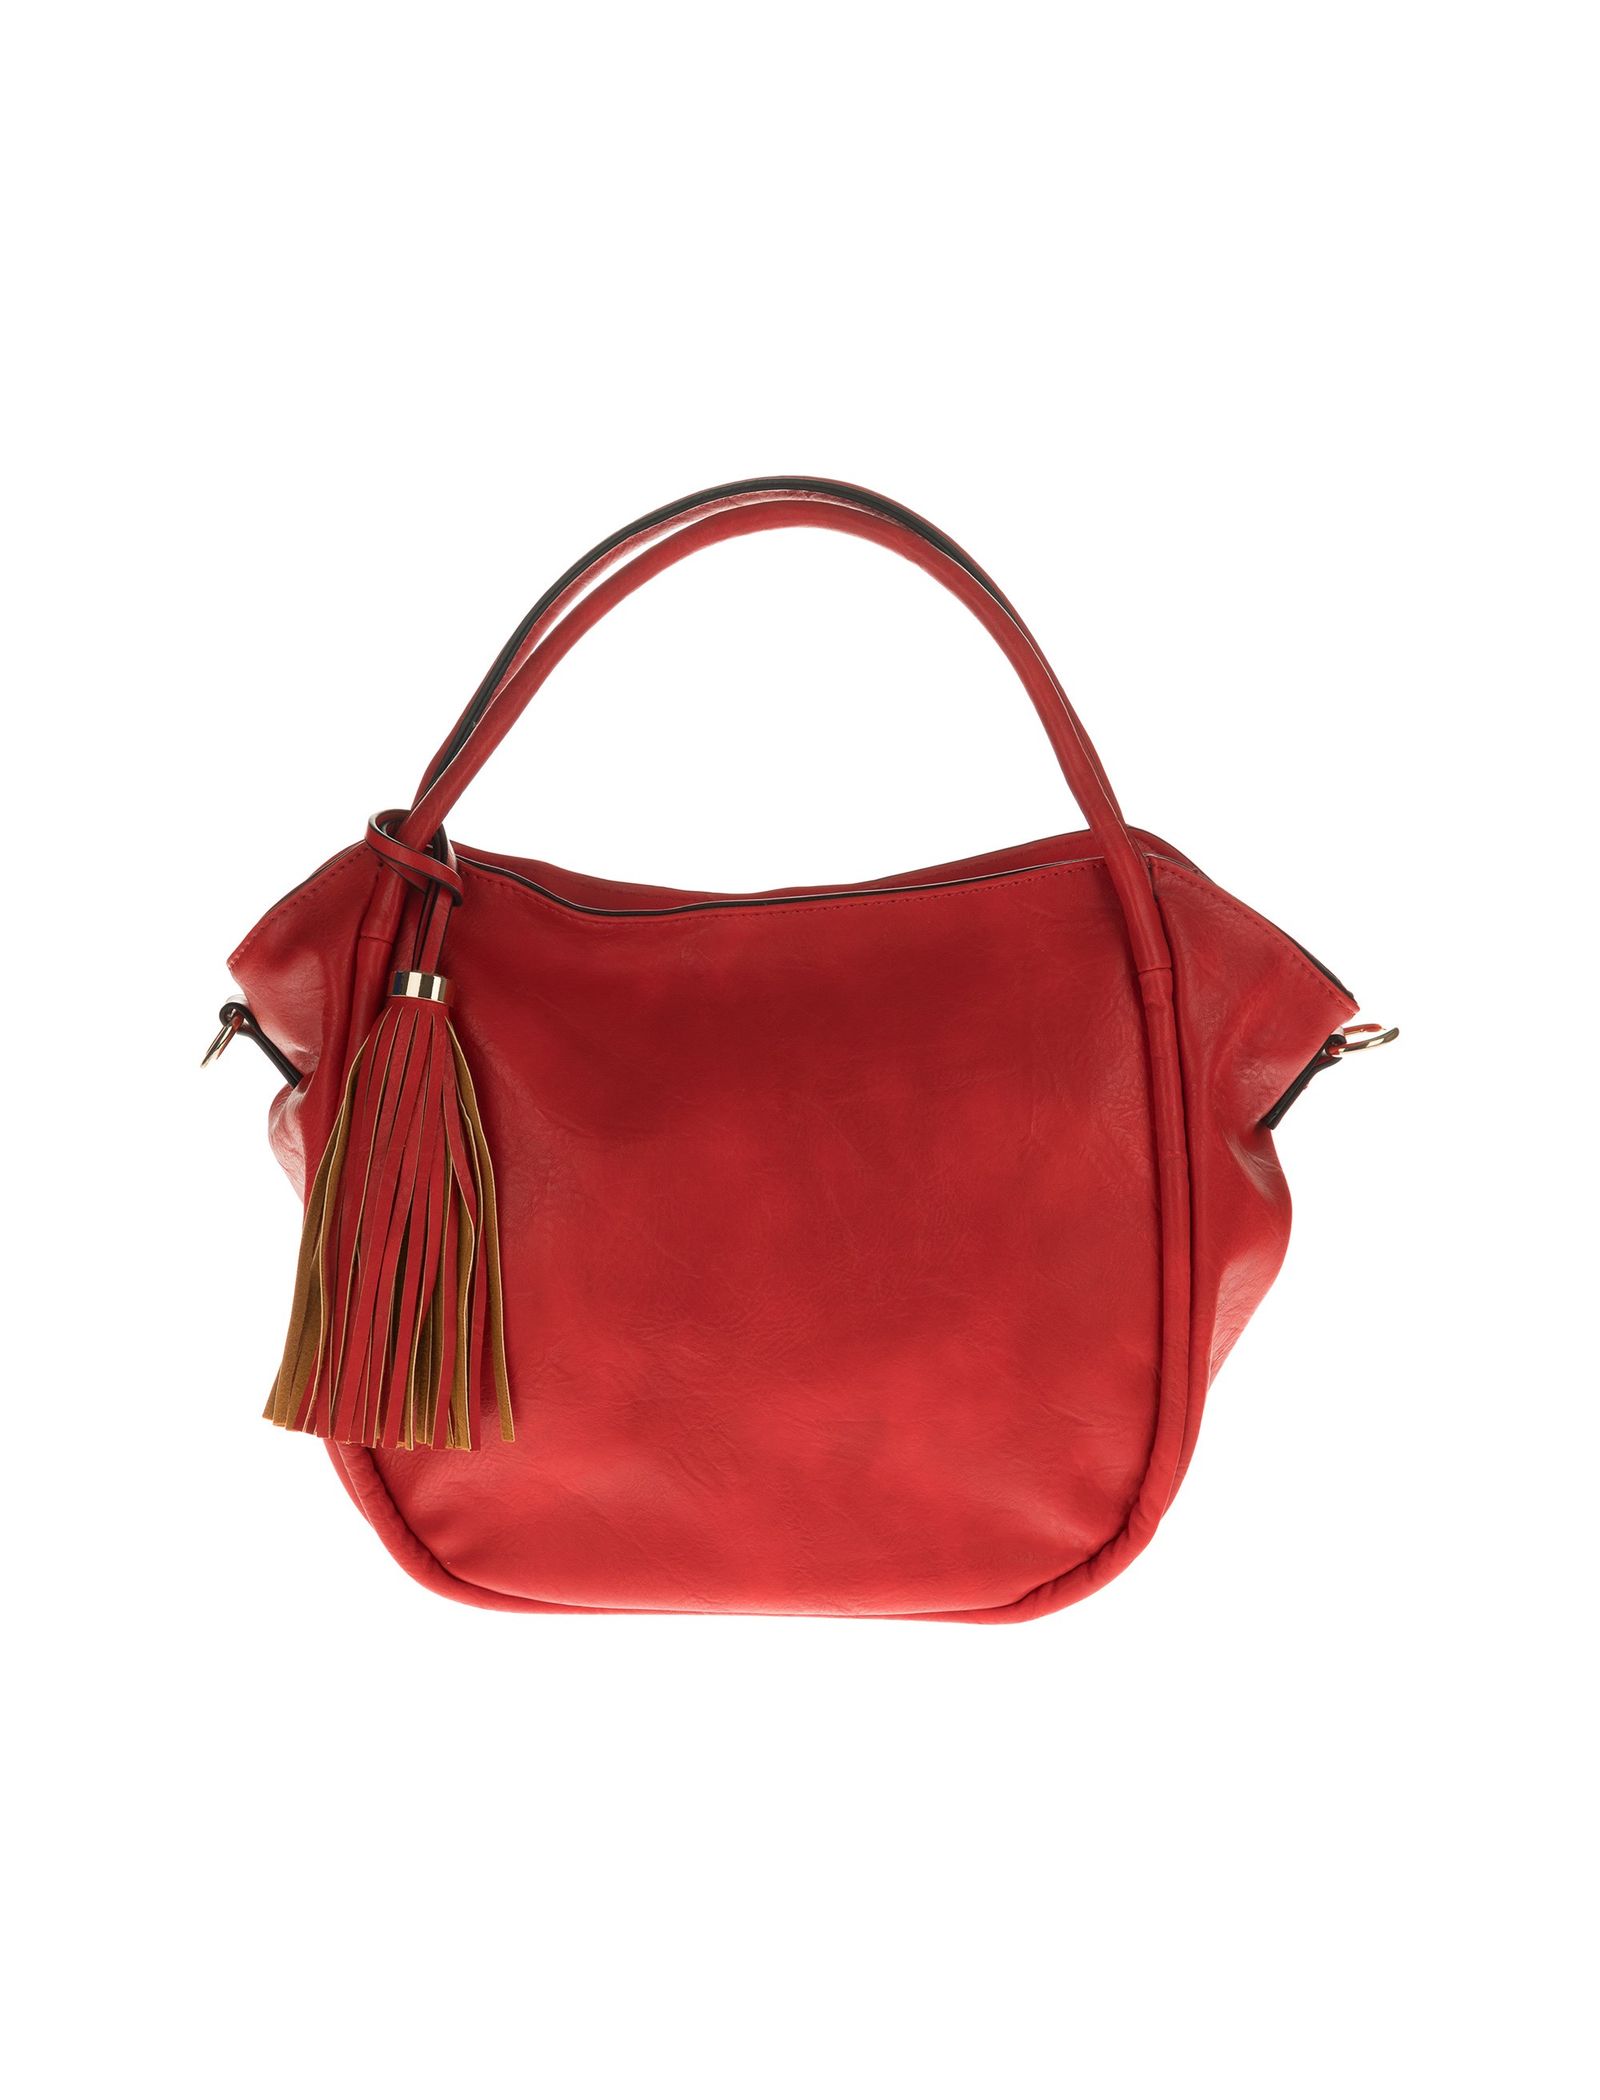 کیف دستی روزمره زنانه - دادلین تک سایز - قرمز  - 1